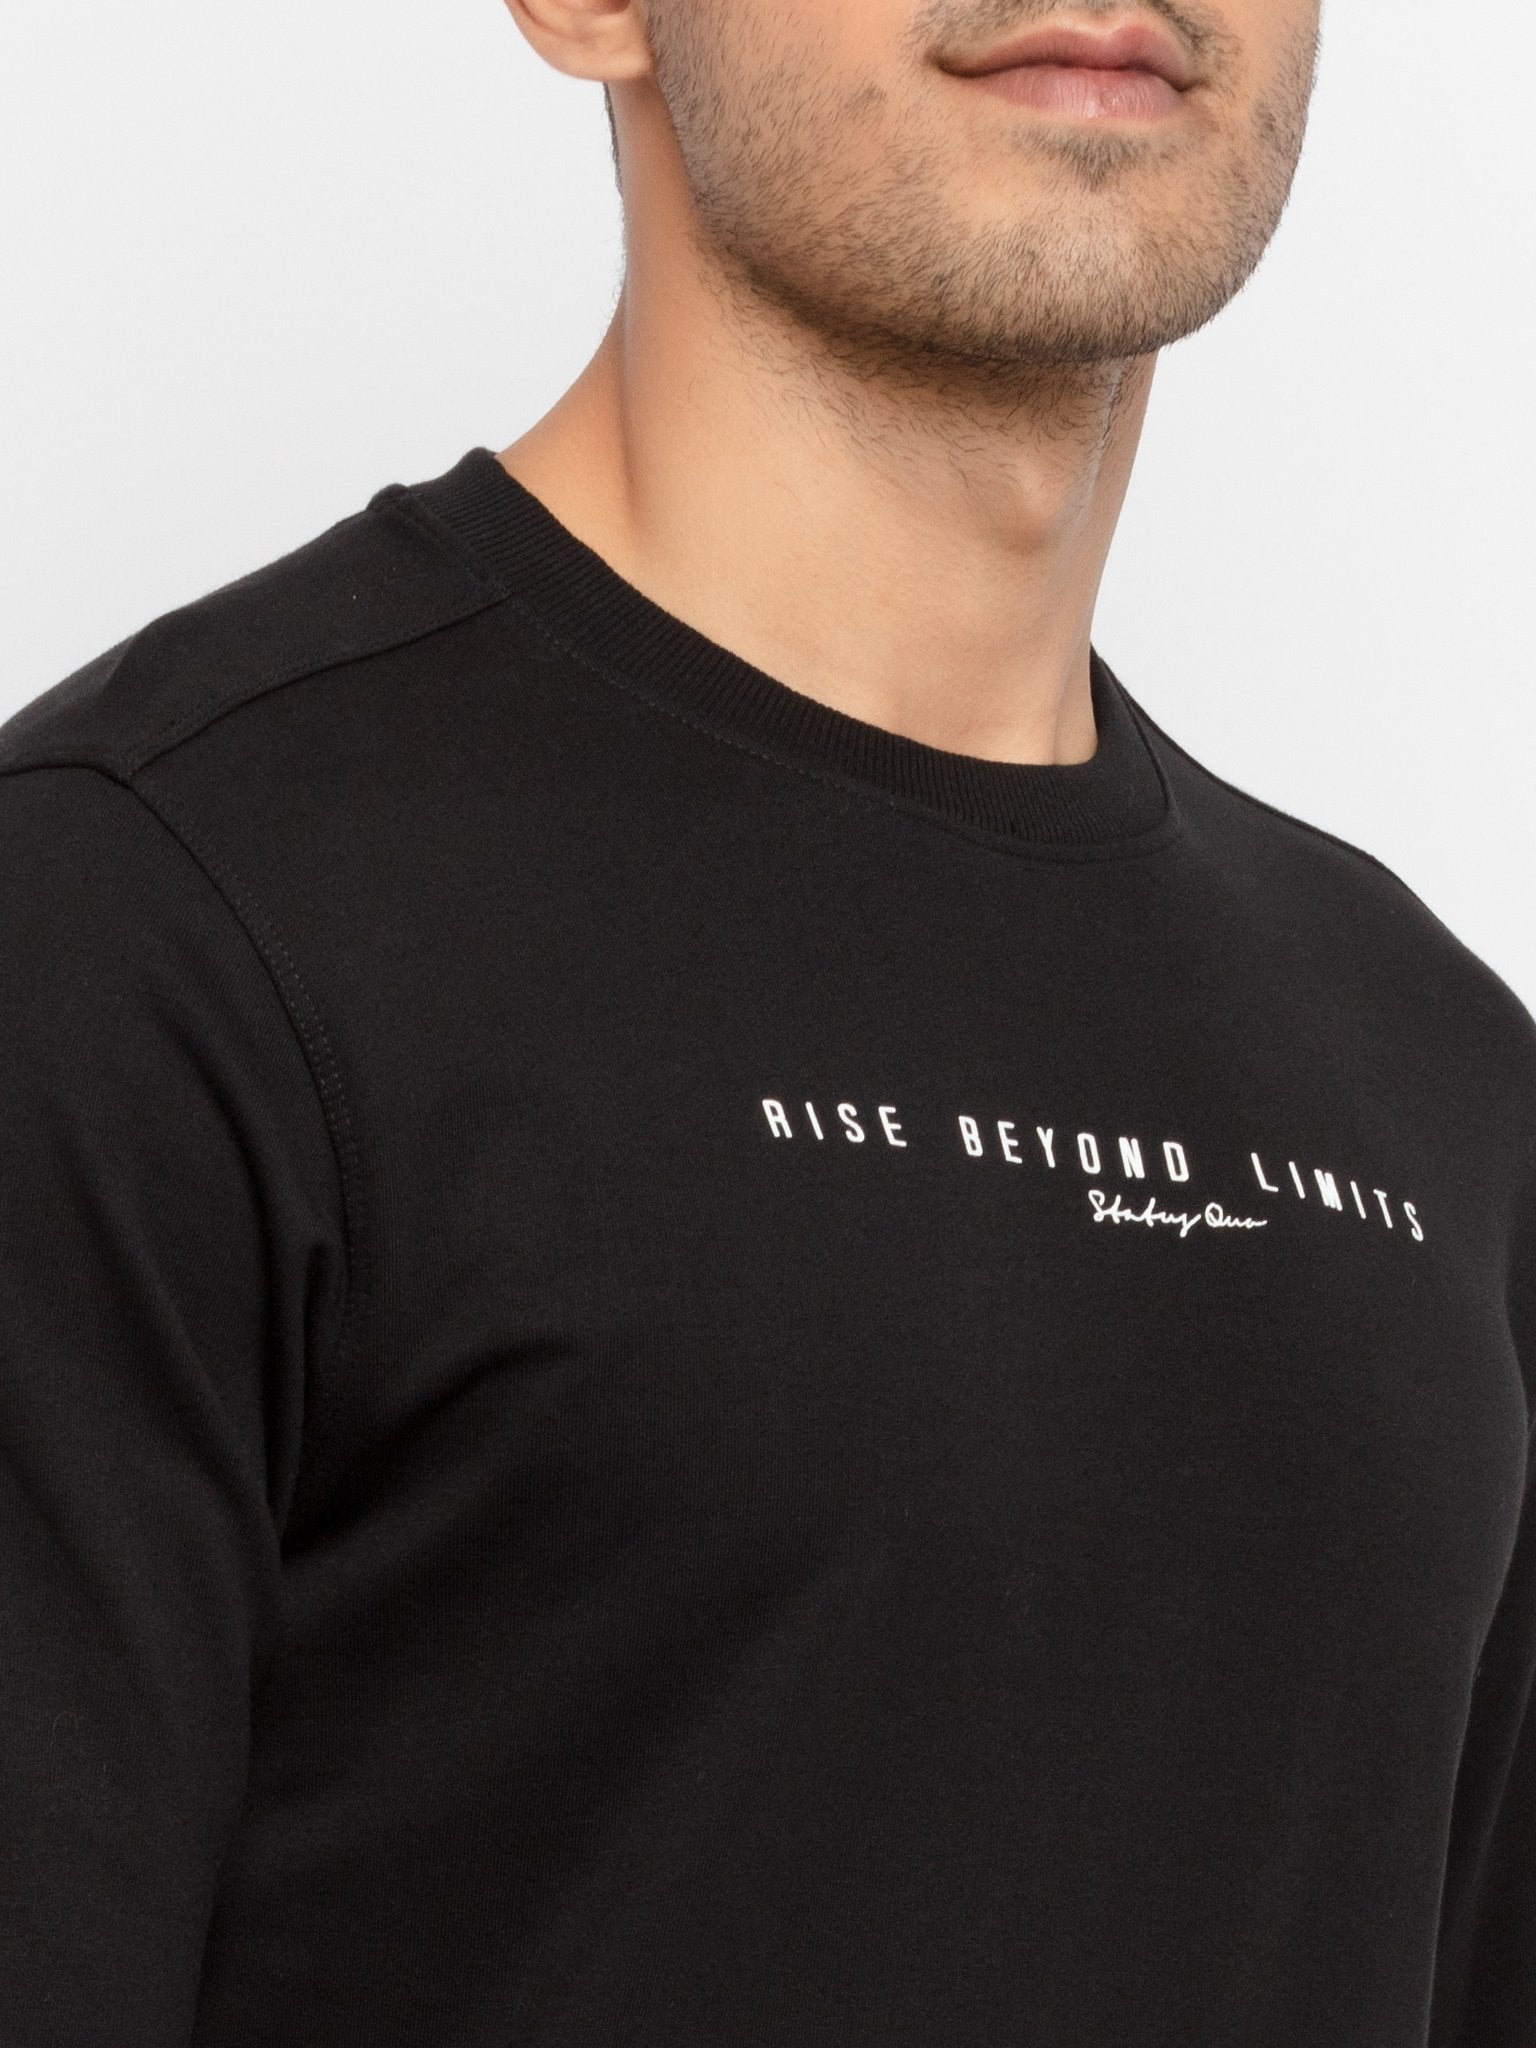 Mens Printed Round Neck Lightweight Sweatshirt